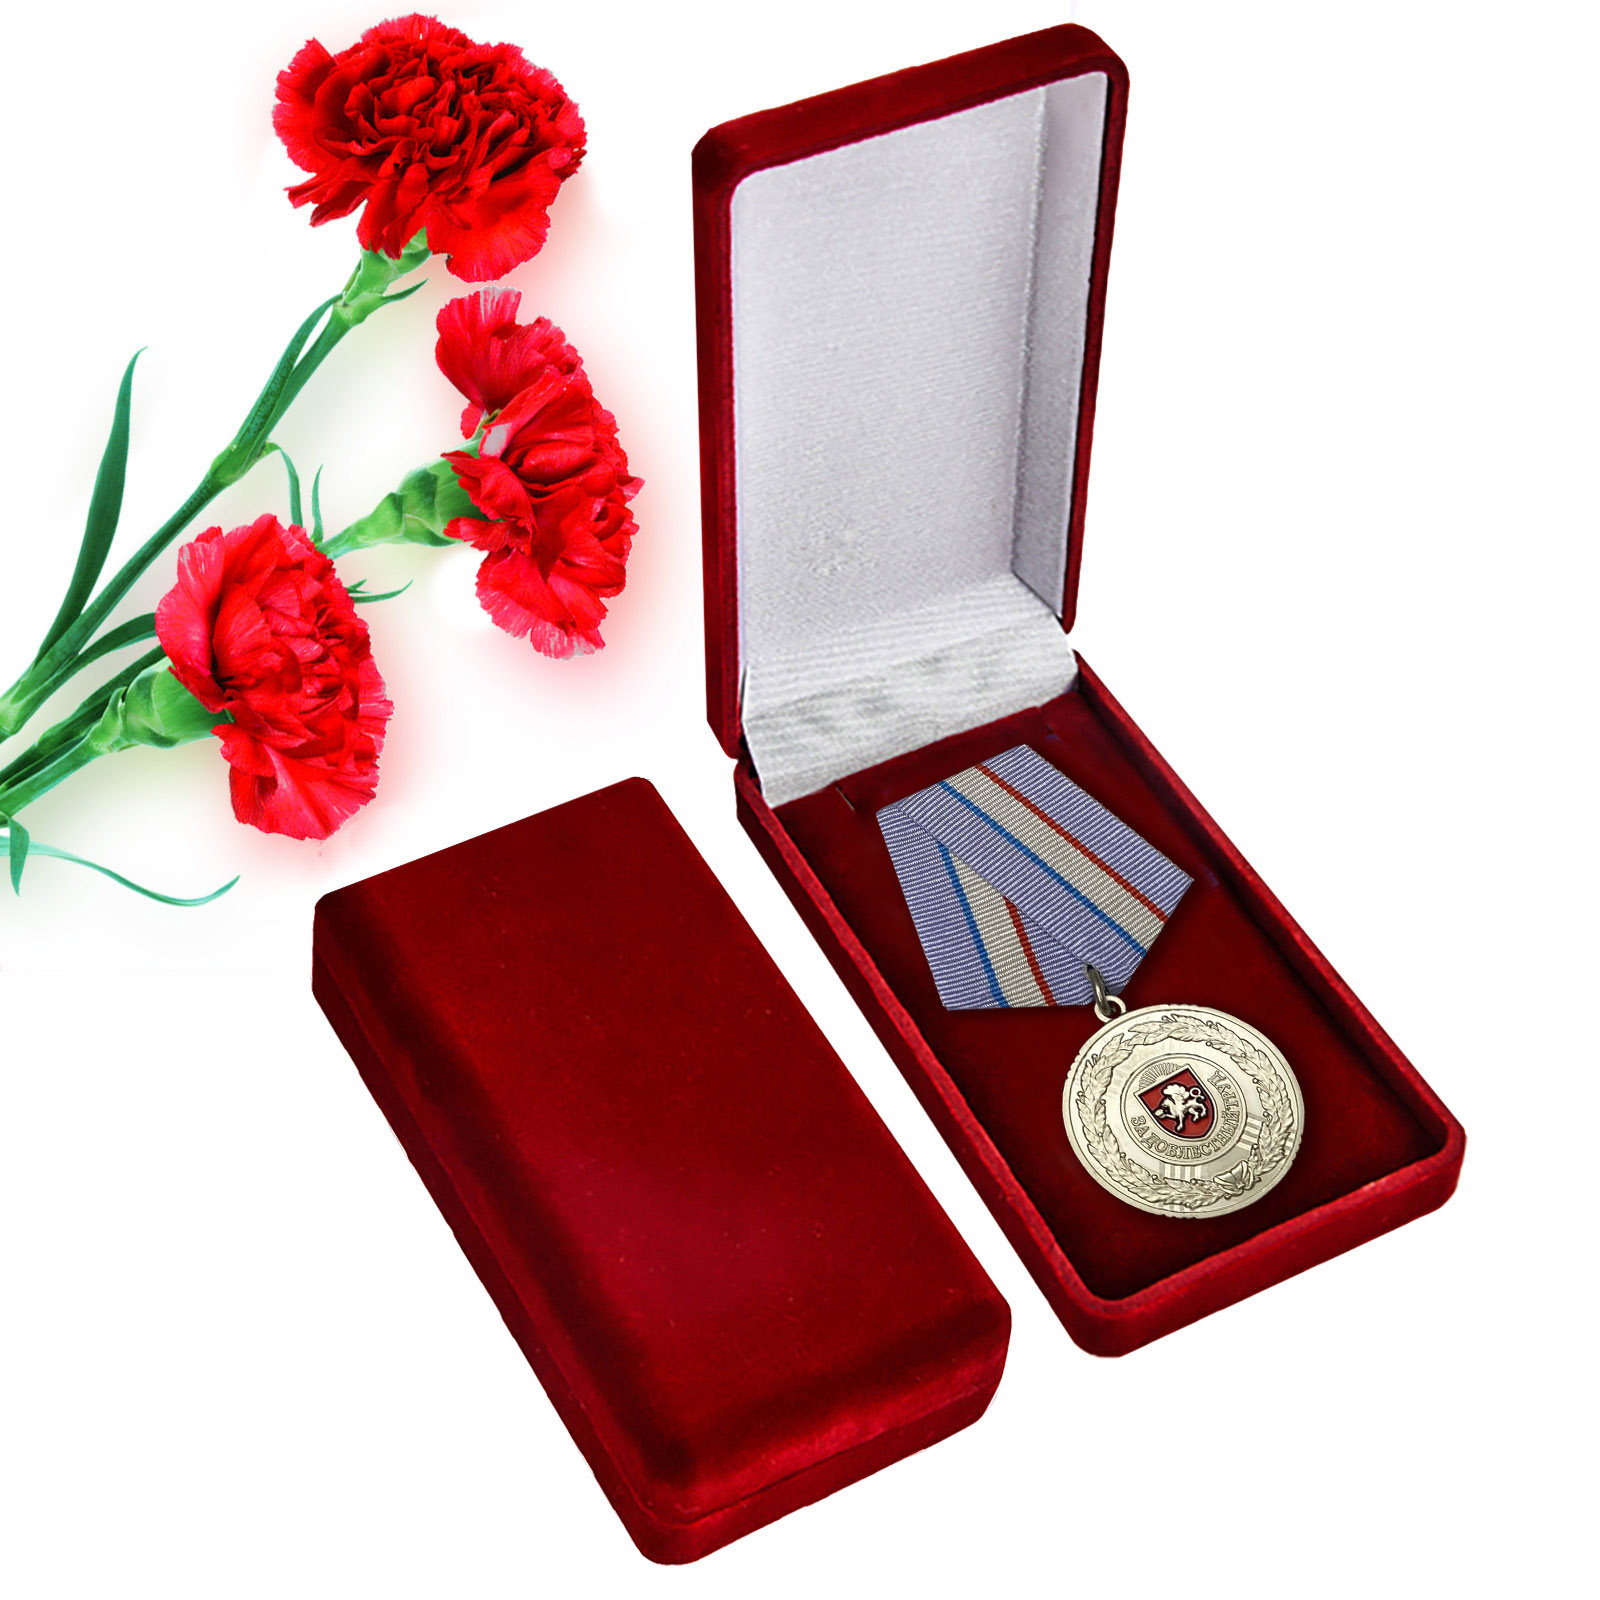 Купить латунную медаль Крыма "За доблестный труд" оптом или в розницу